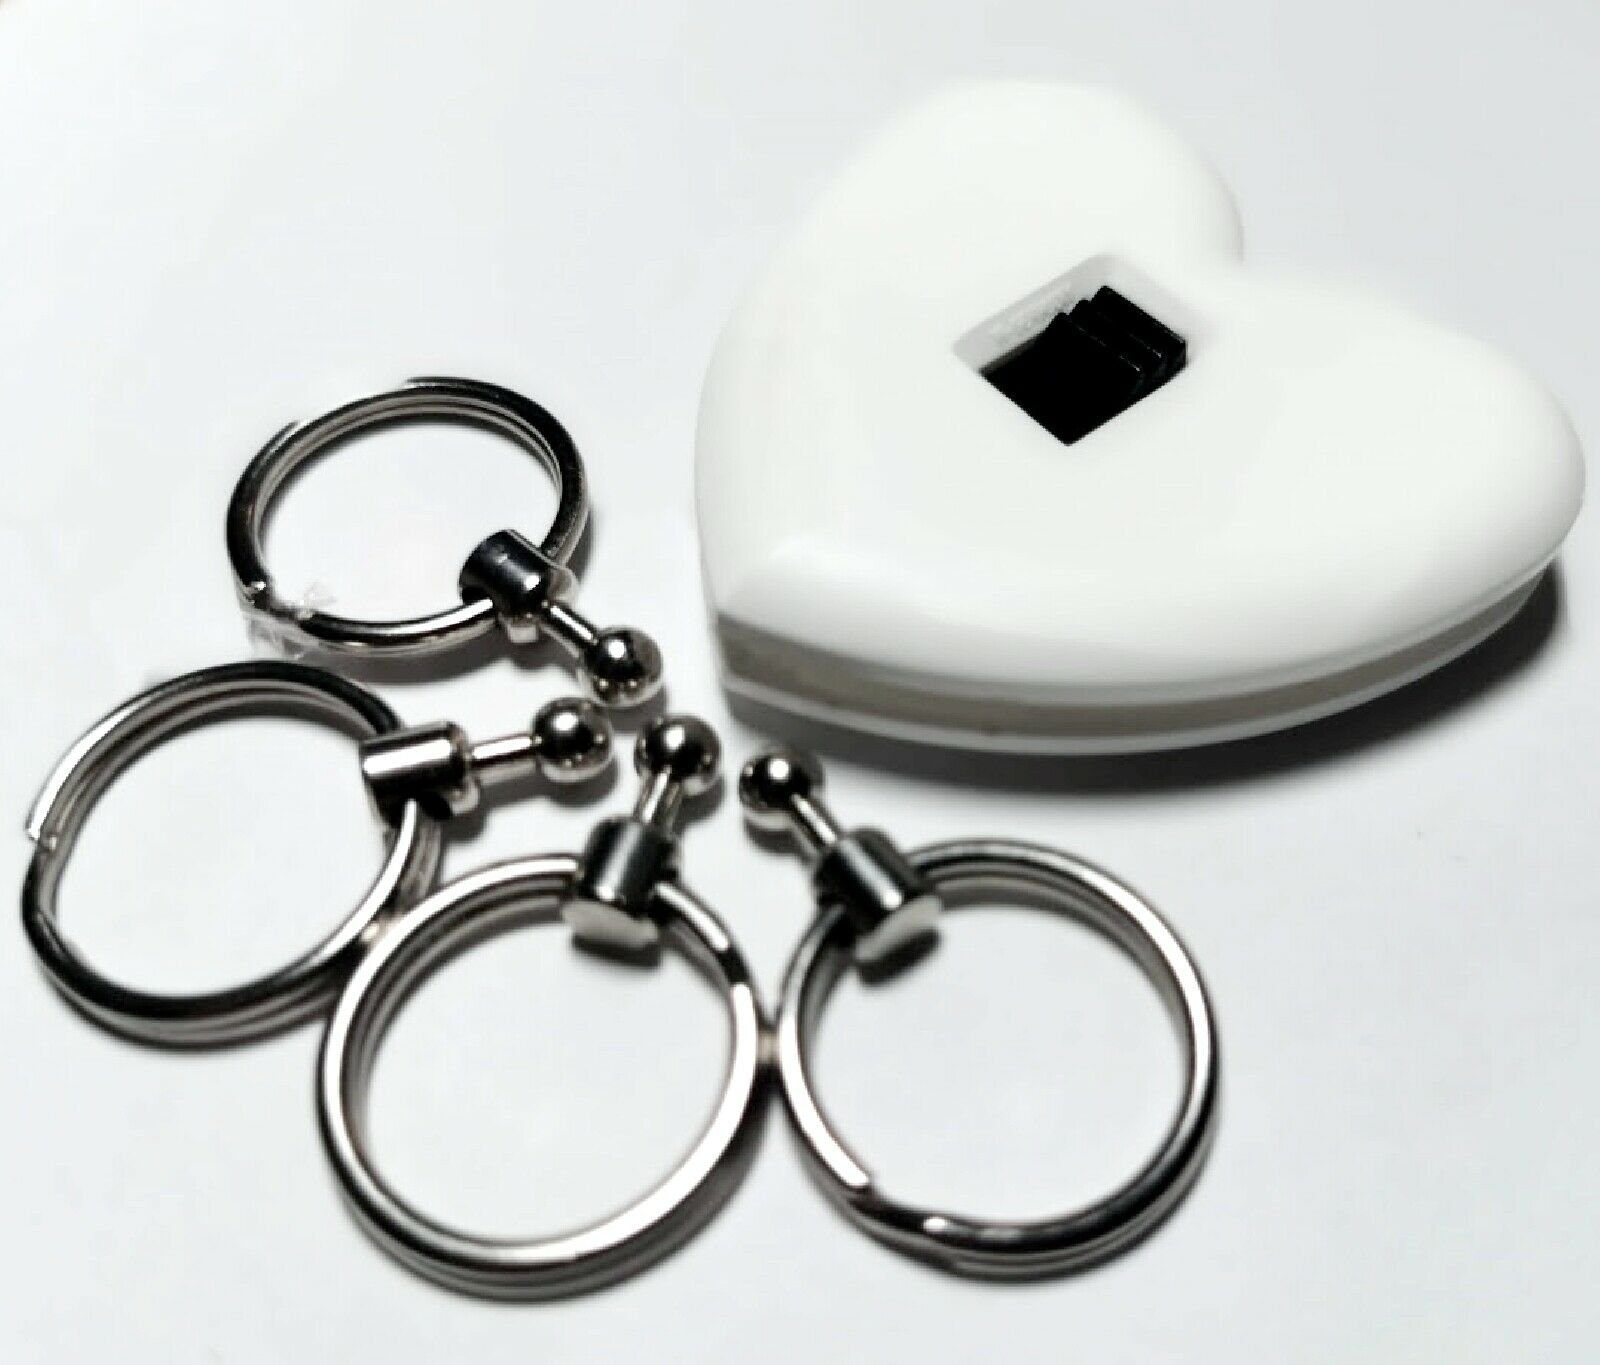 HR Autocomfort Schlüsselanhänger Set Hase BUNNY Weisser Schlüsselanhänger mit PLAYBOY Relief Emblem